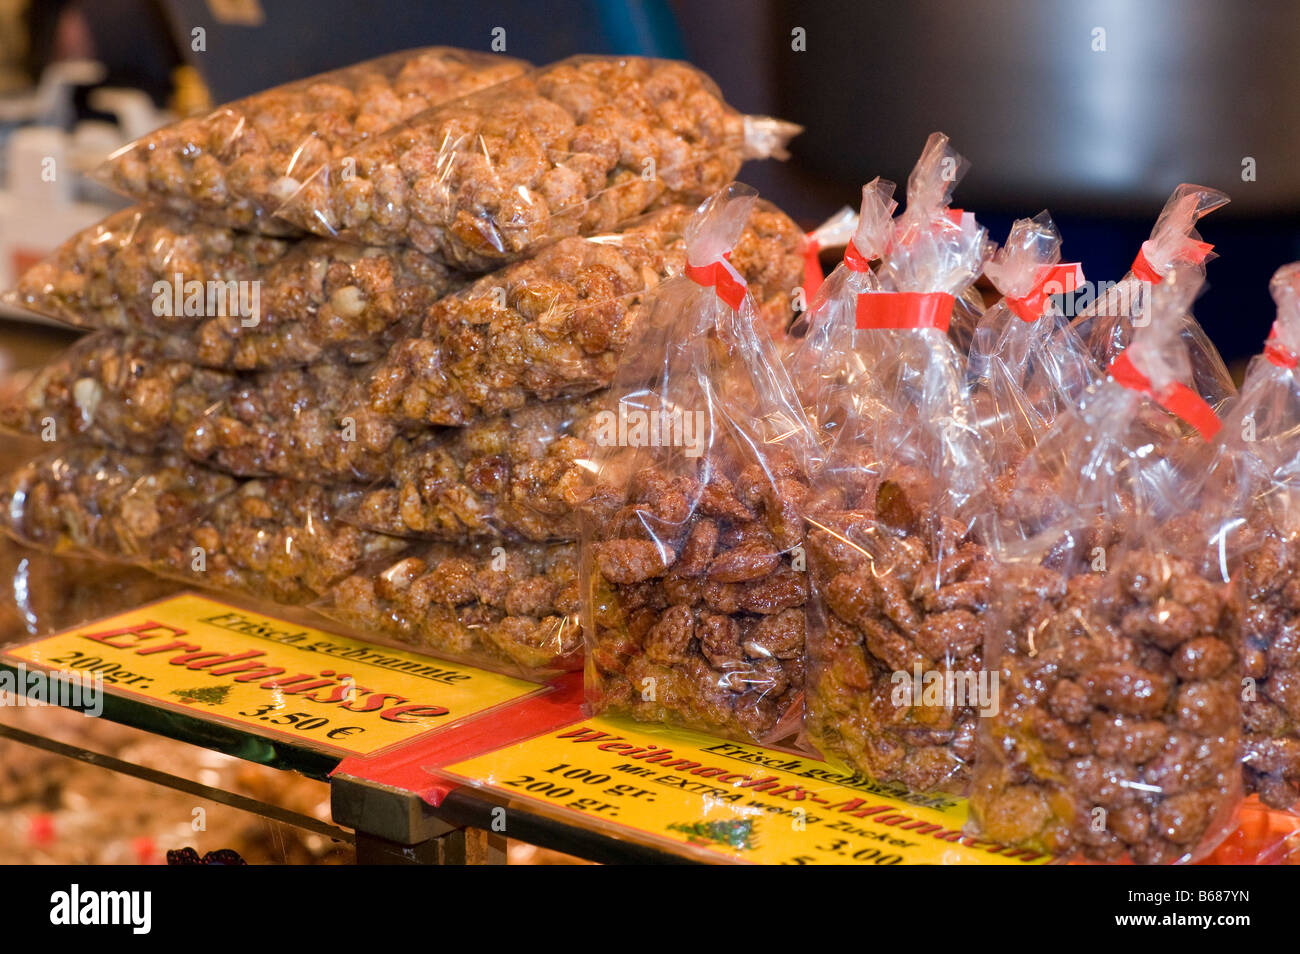 Peanuts and almonds for sale in a stall on a christmas market. Gebrannte Erdnüsse und Mandeln in einem Stand auf Weihnachtsmarkt Stock Photo